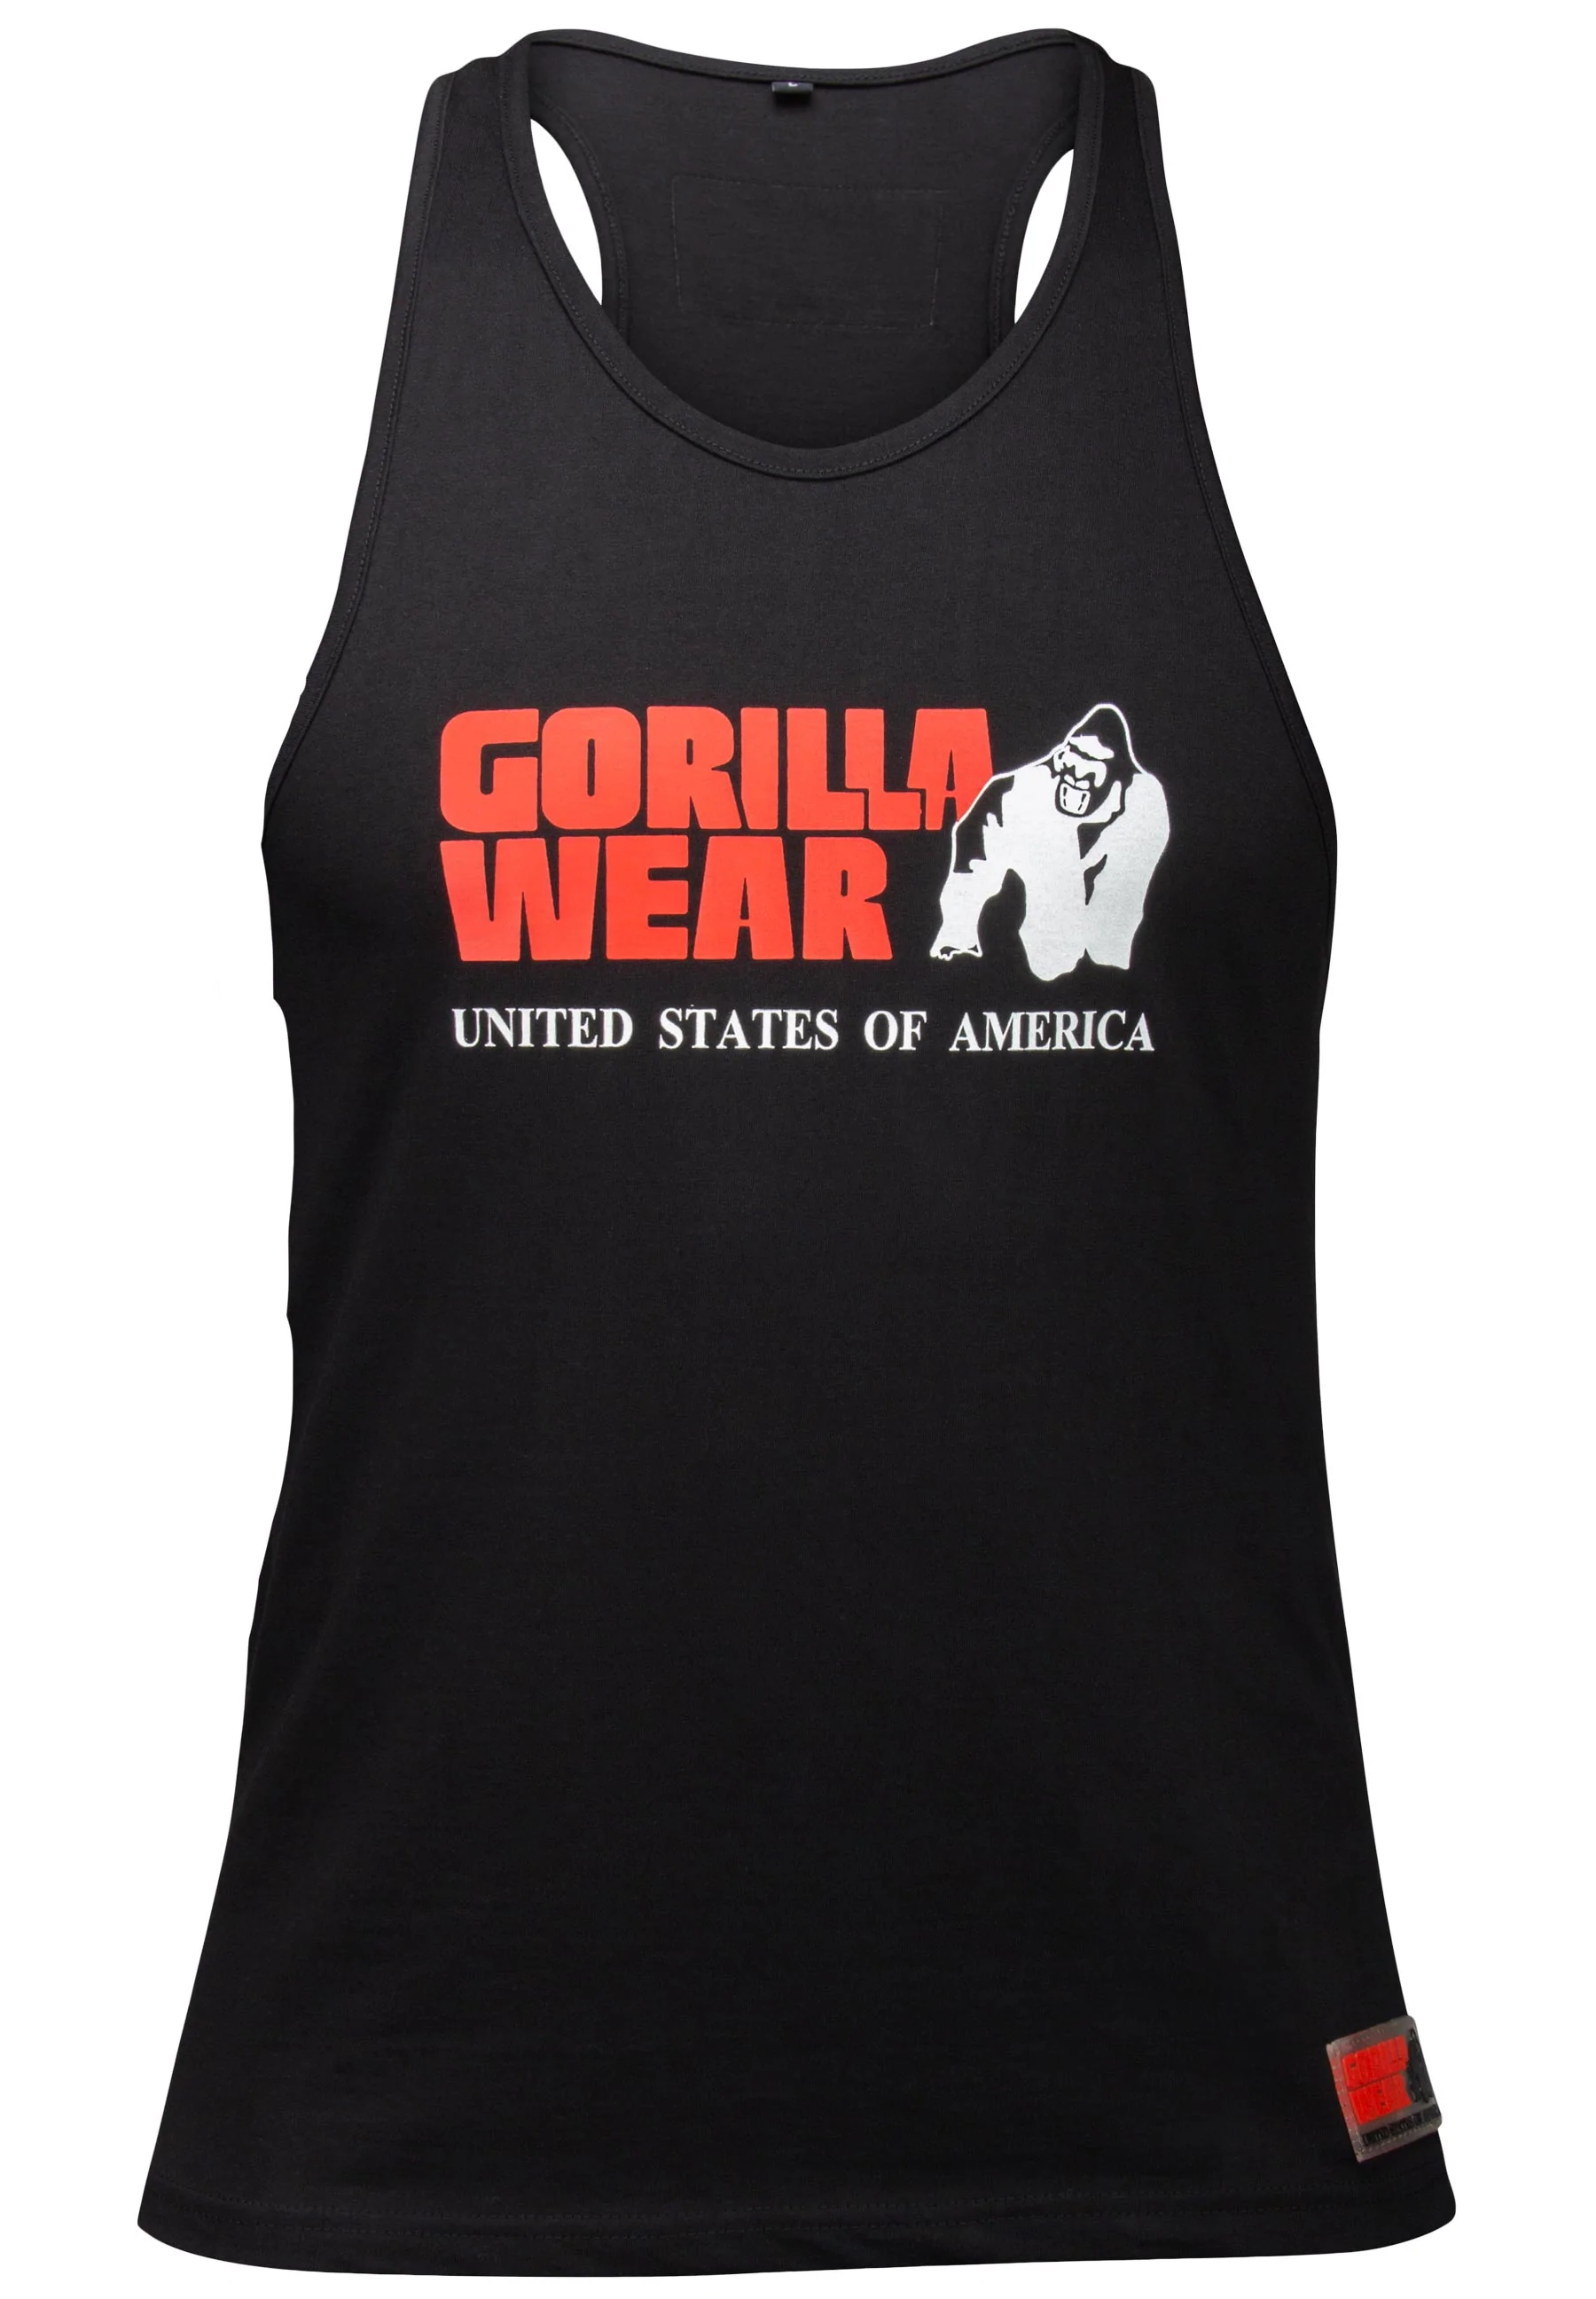 Women's Tank Tops: Functional Fitness Apparel - Gorilla Wear